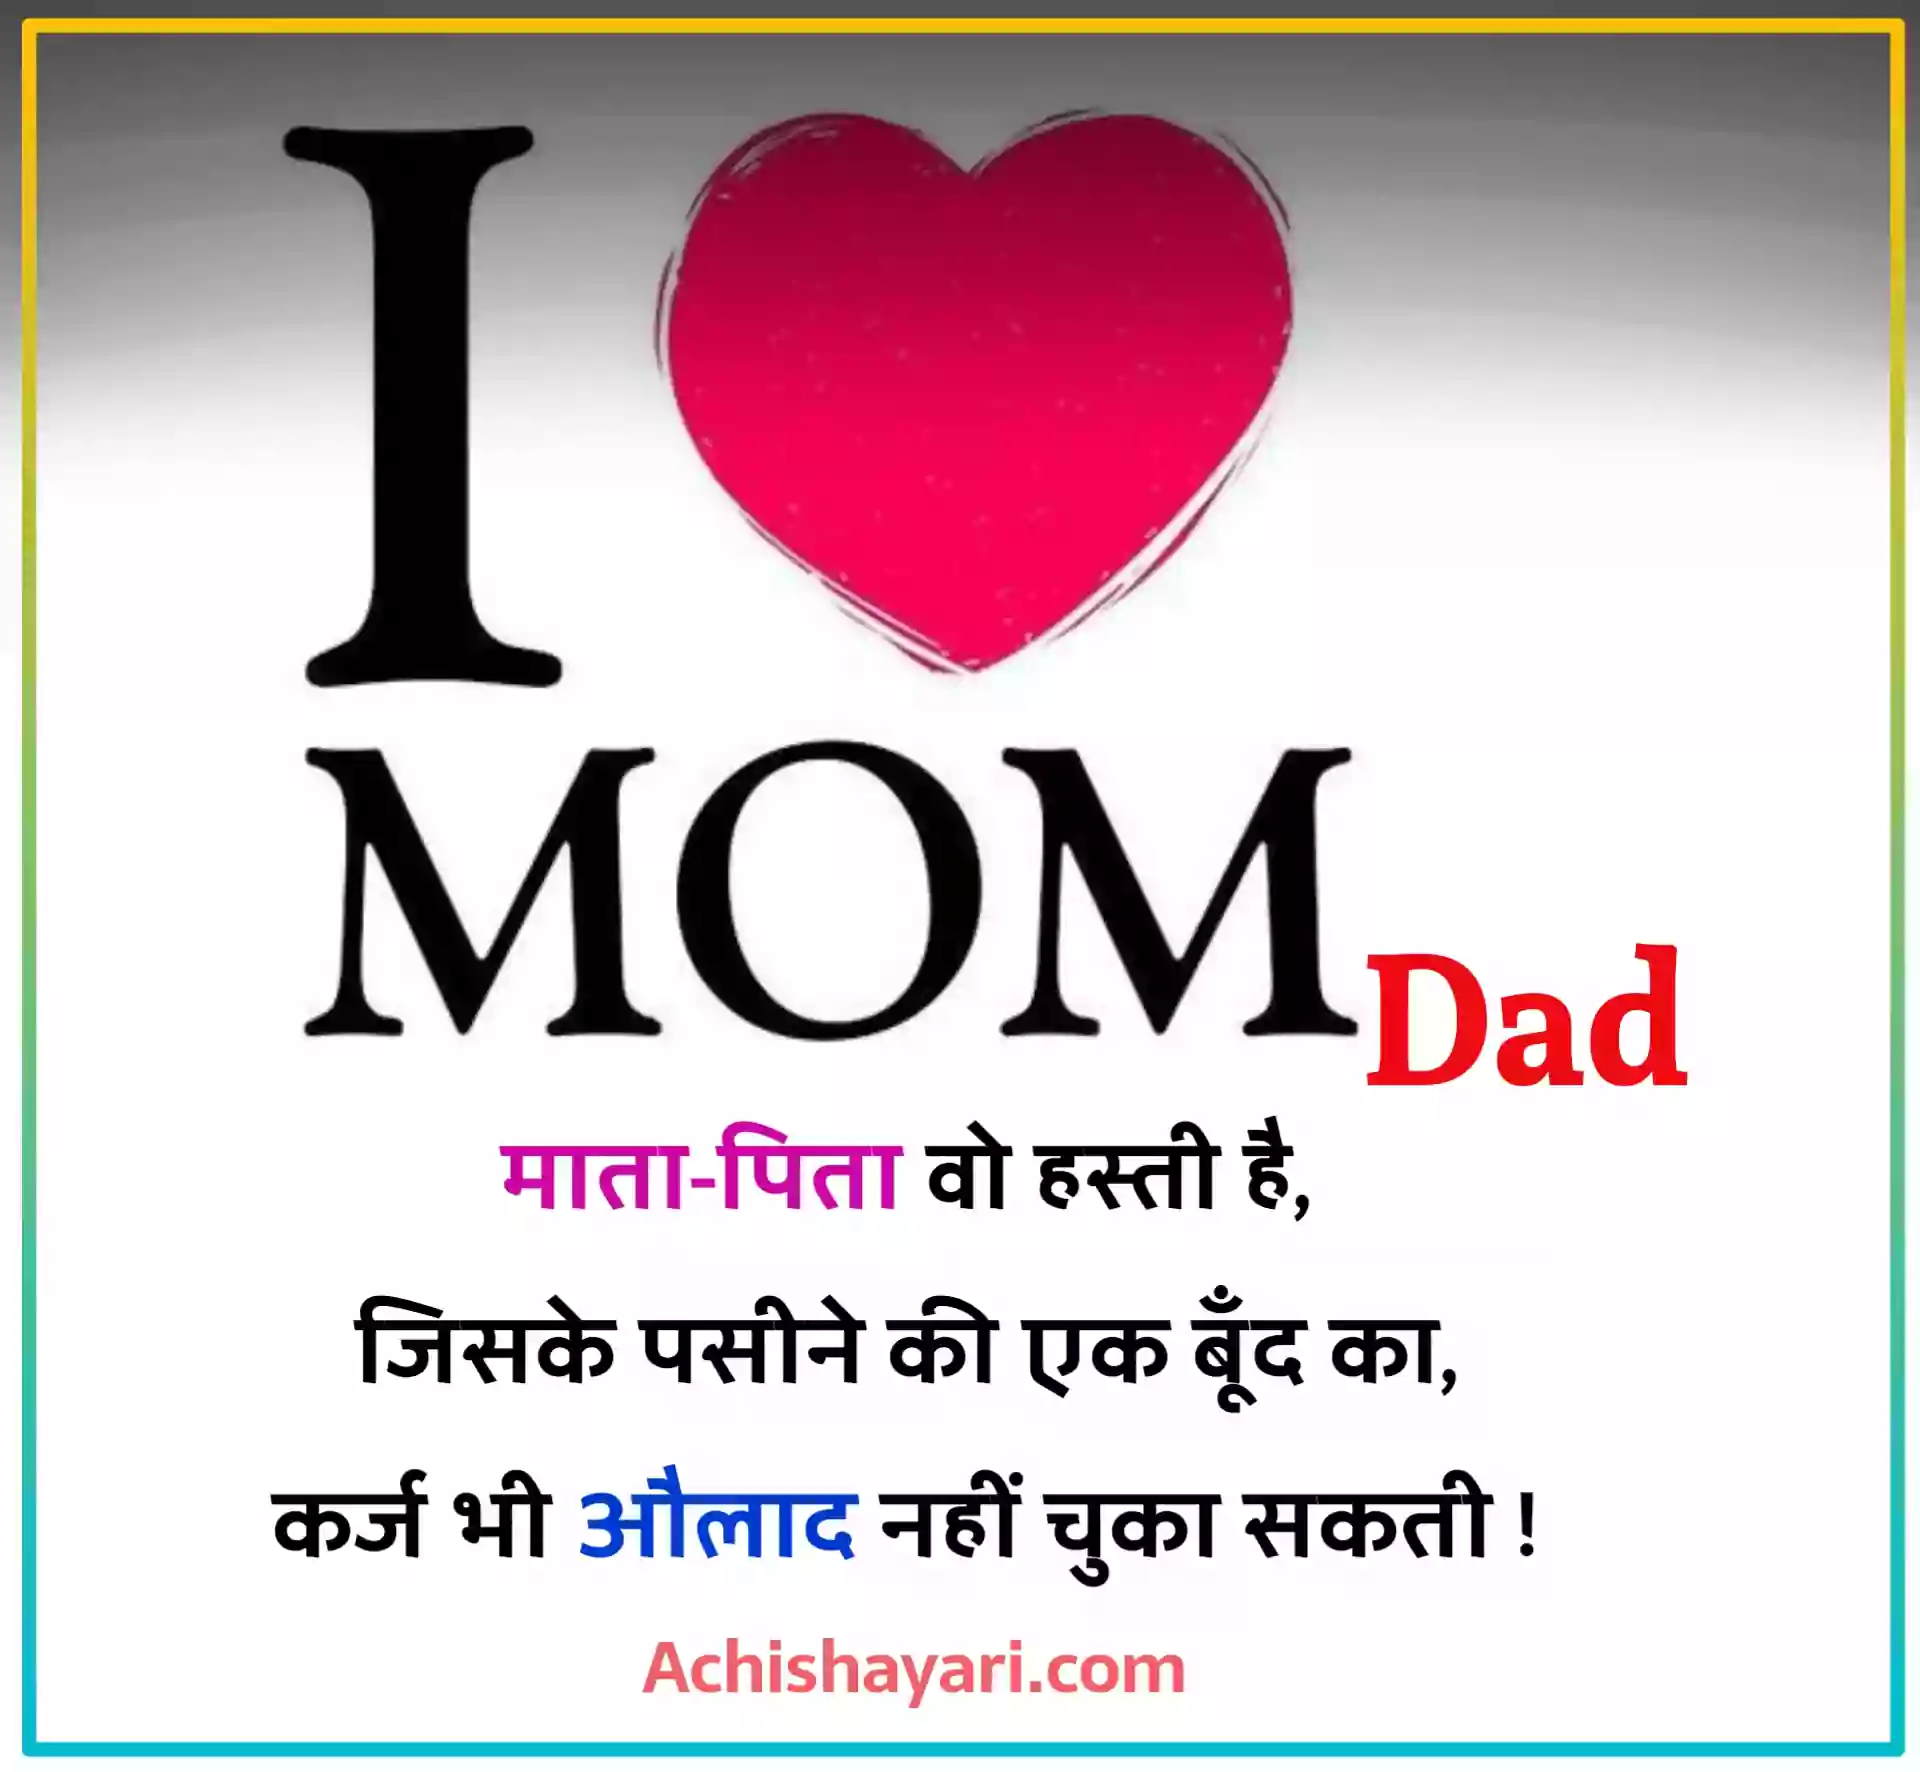 Mom Dad Shayari Image